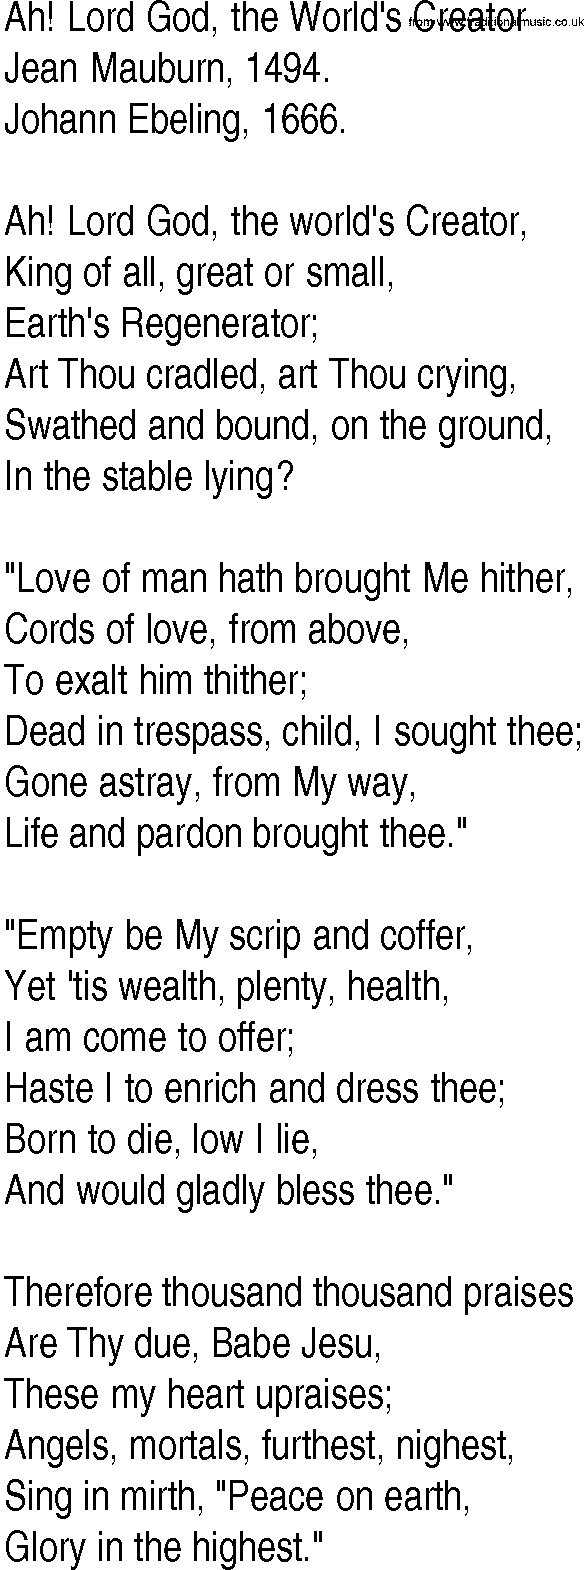 Hymn and Gospel Song: Ah! Lord God, the World's Creator by Jean Mauburn lyrics